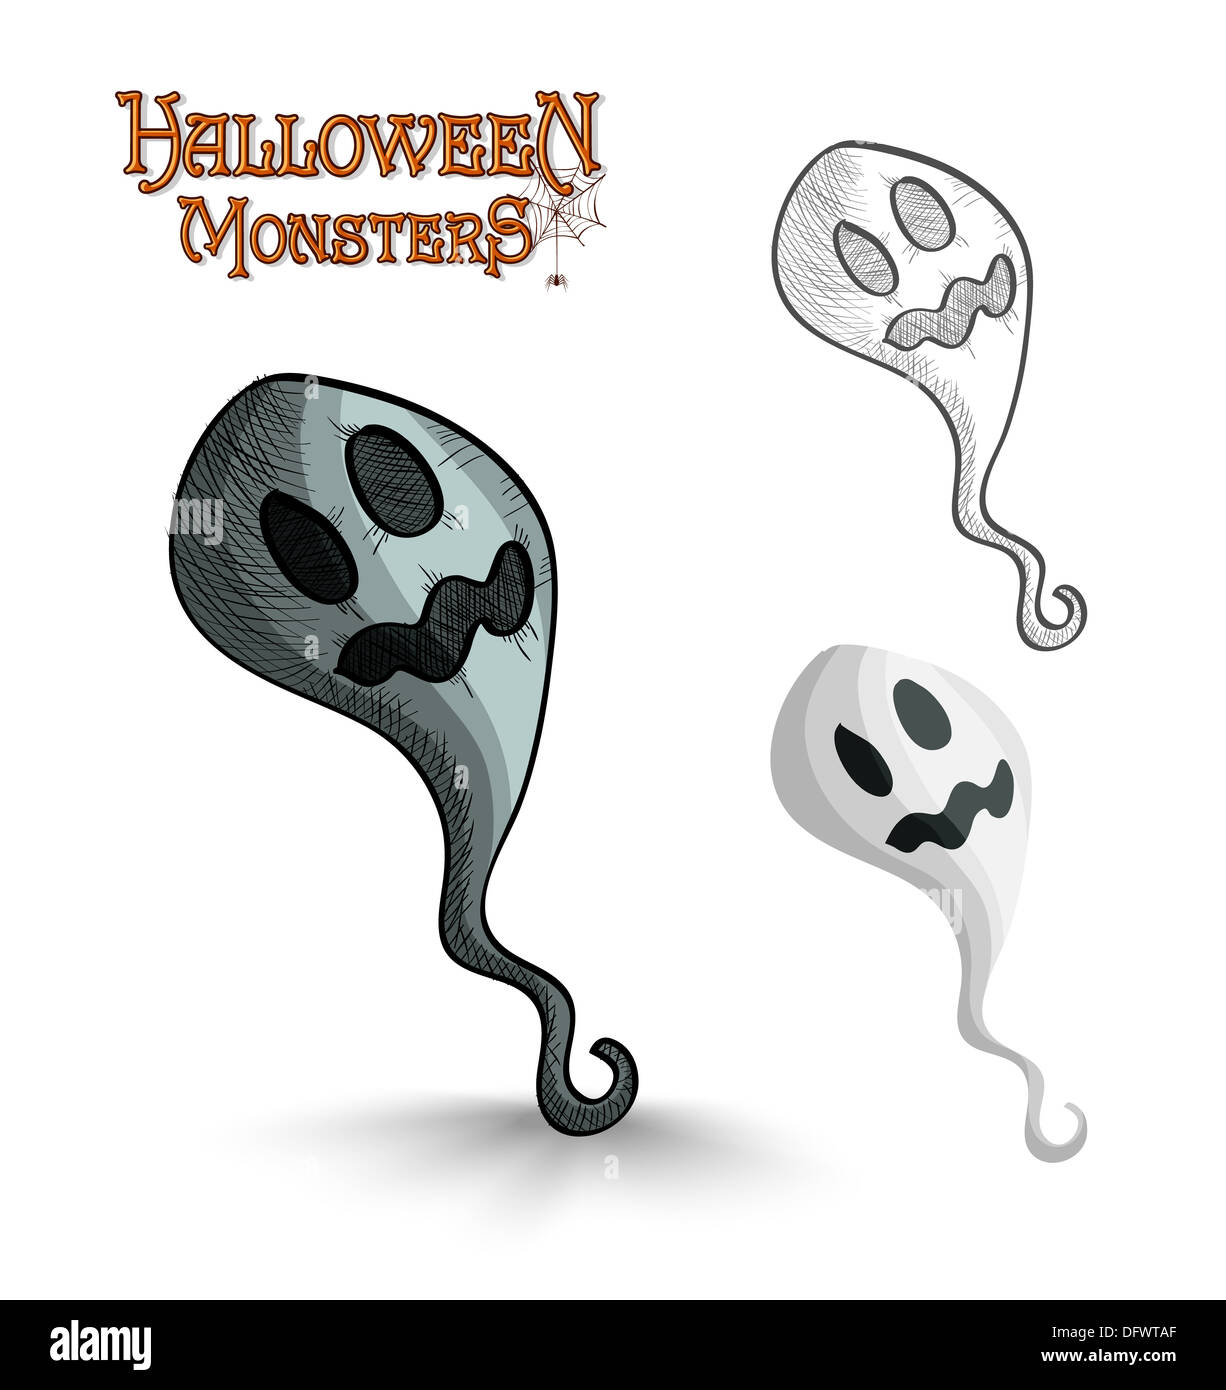 Gruselige Halloween-Monster cartoon Geist gesetzt. EPS10 Vektor-Datei  organisiert in Schichten für die einfache Bearbeitung Stockfotografie -  Alamy